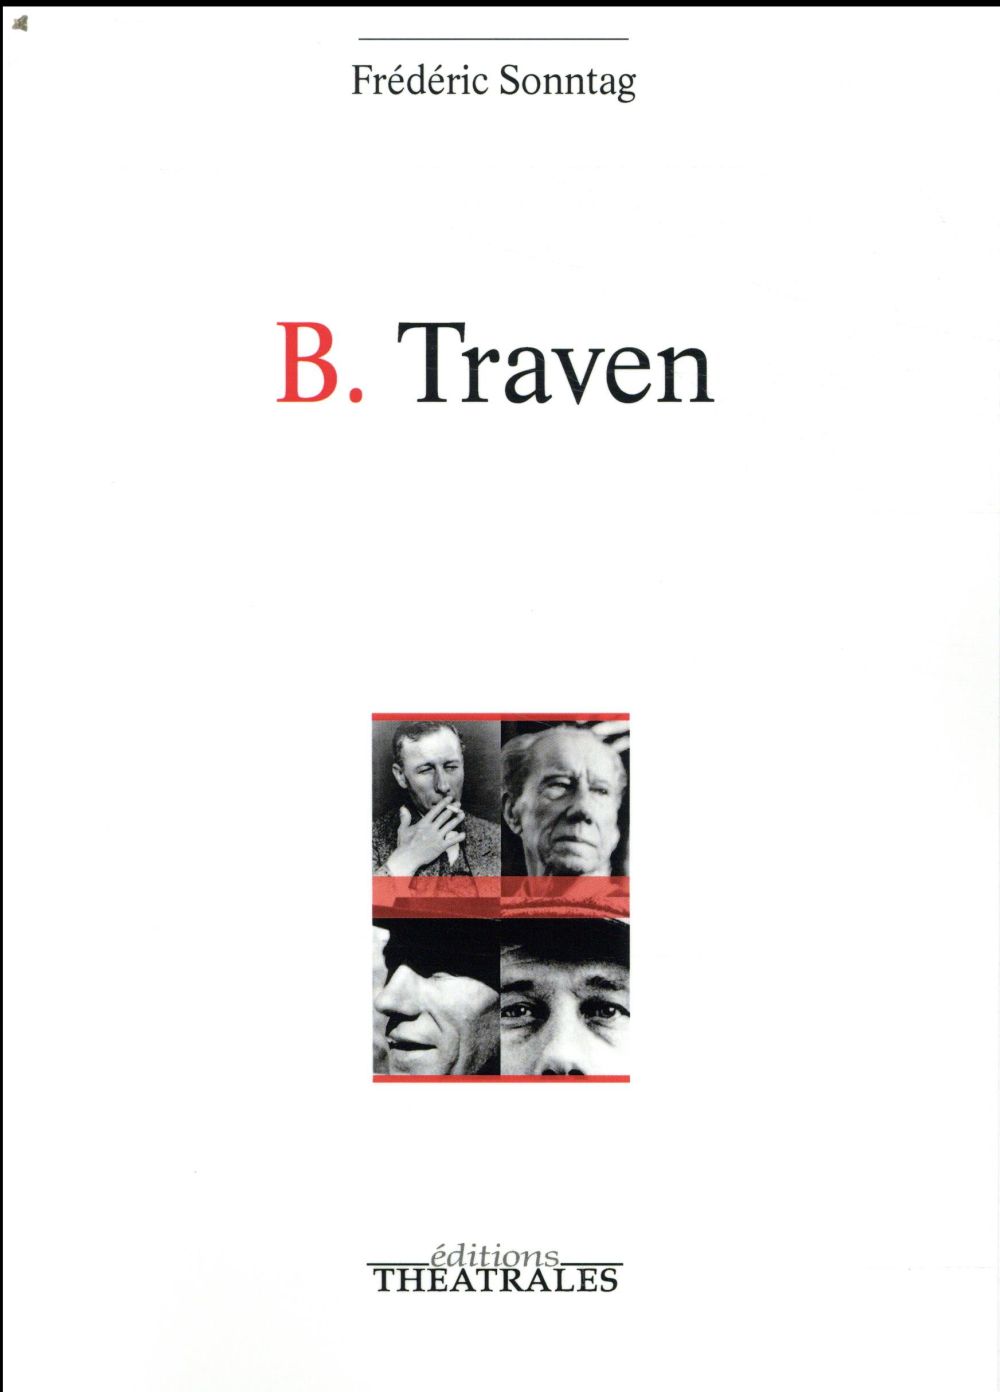 B TRAVEN